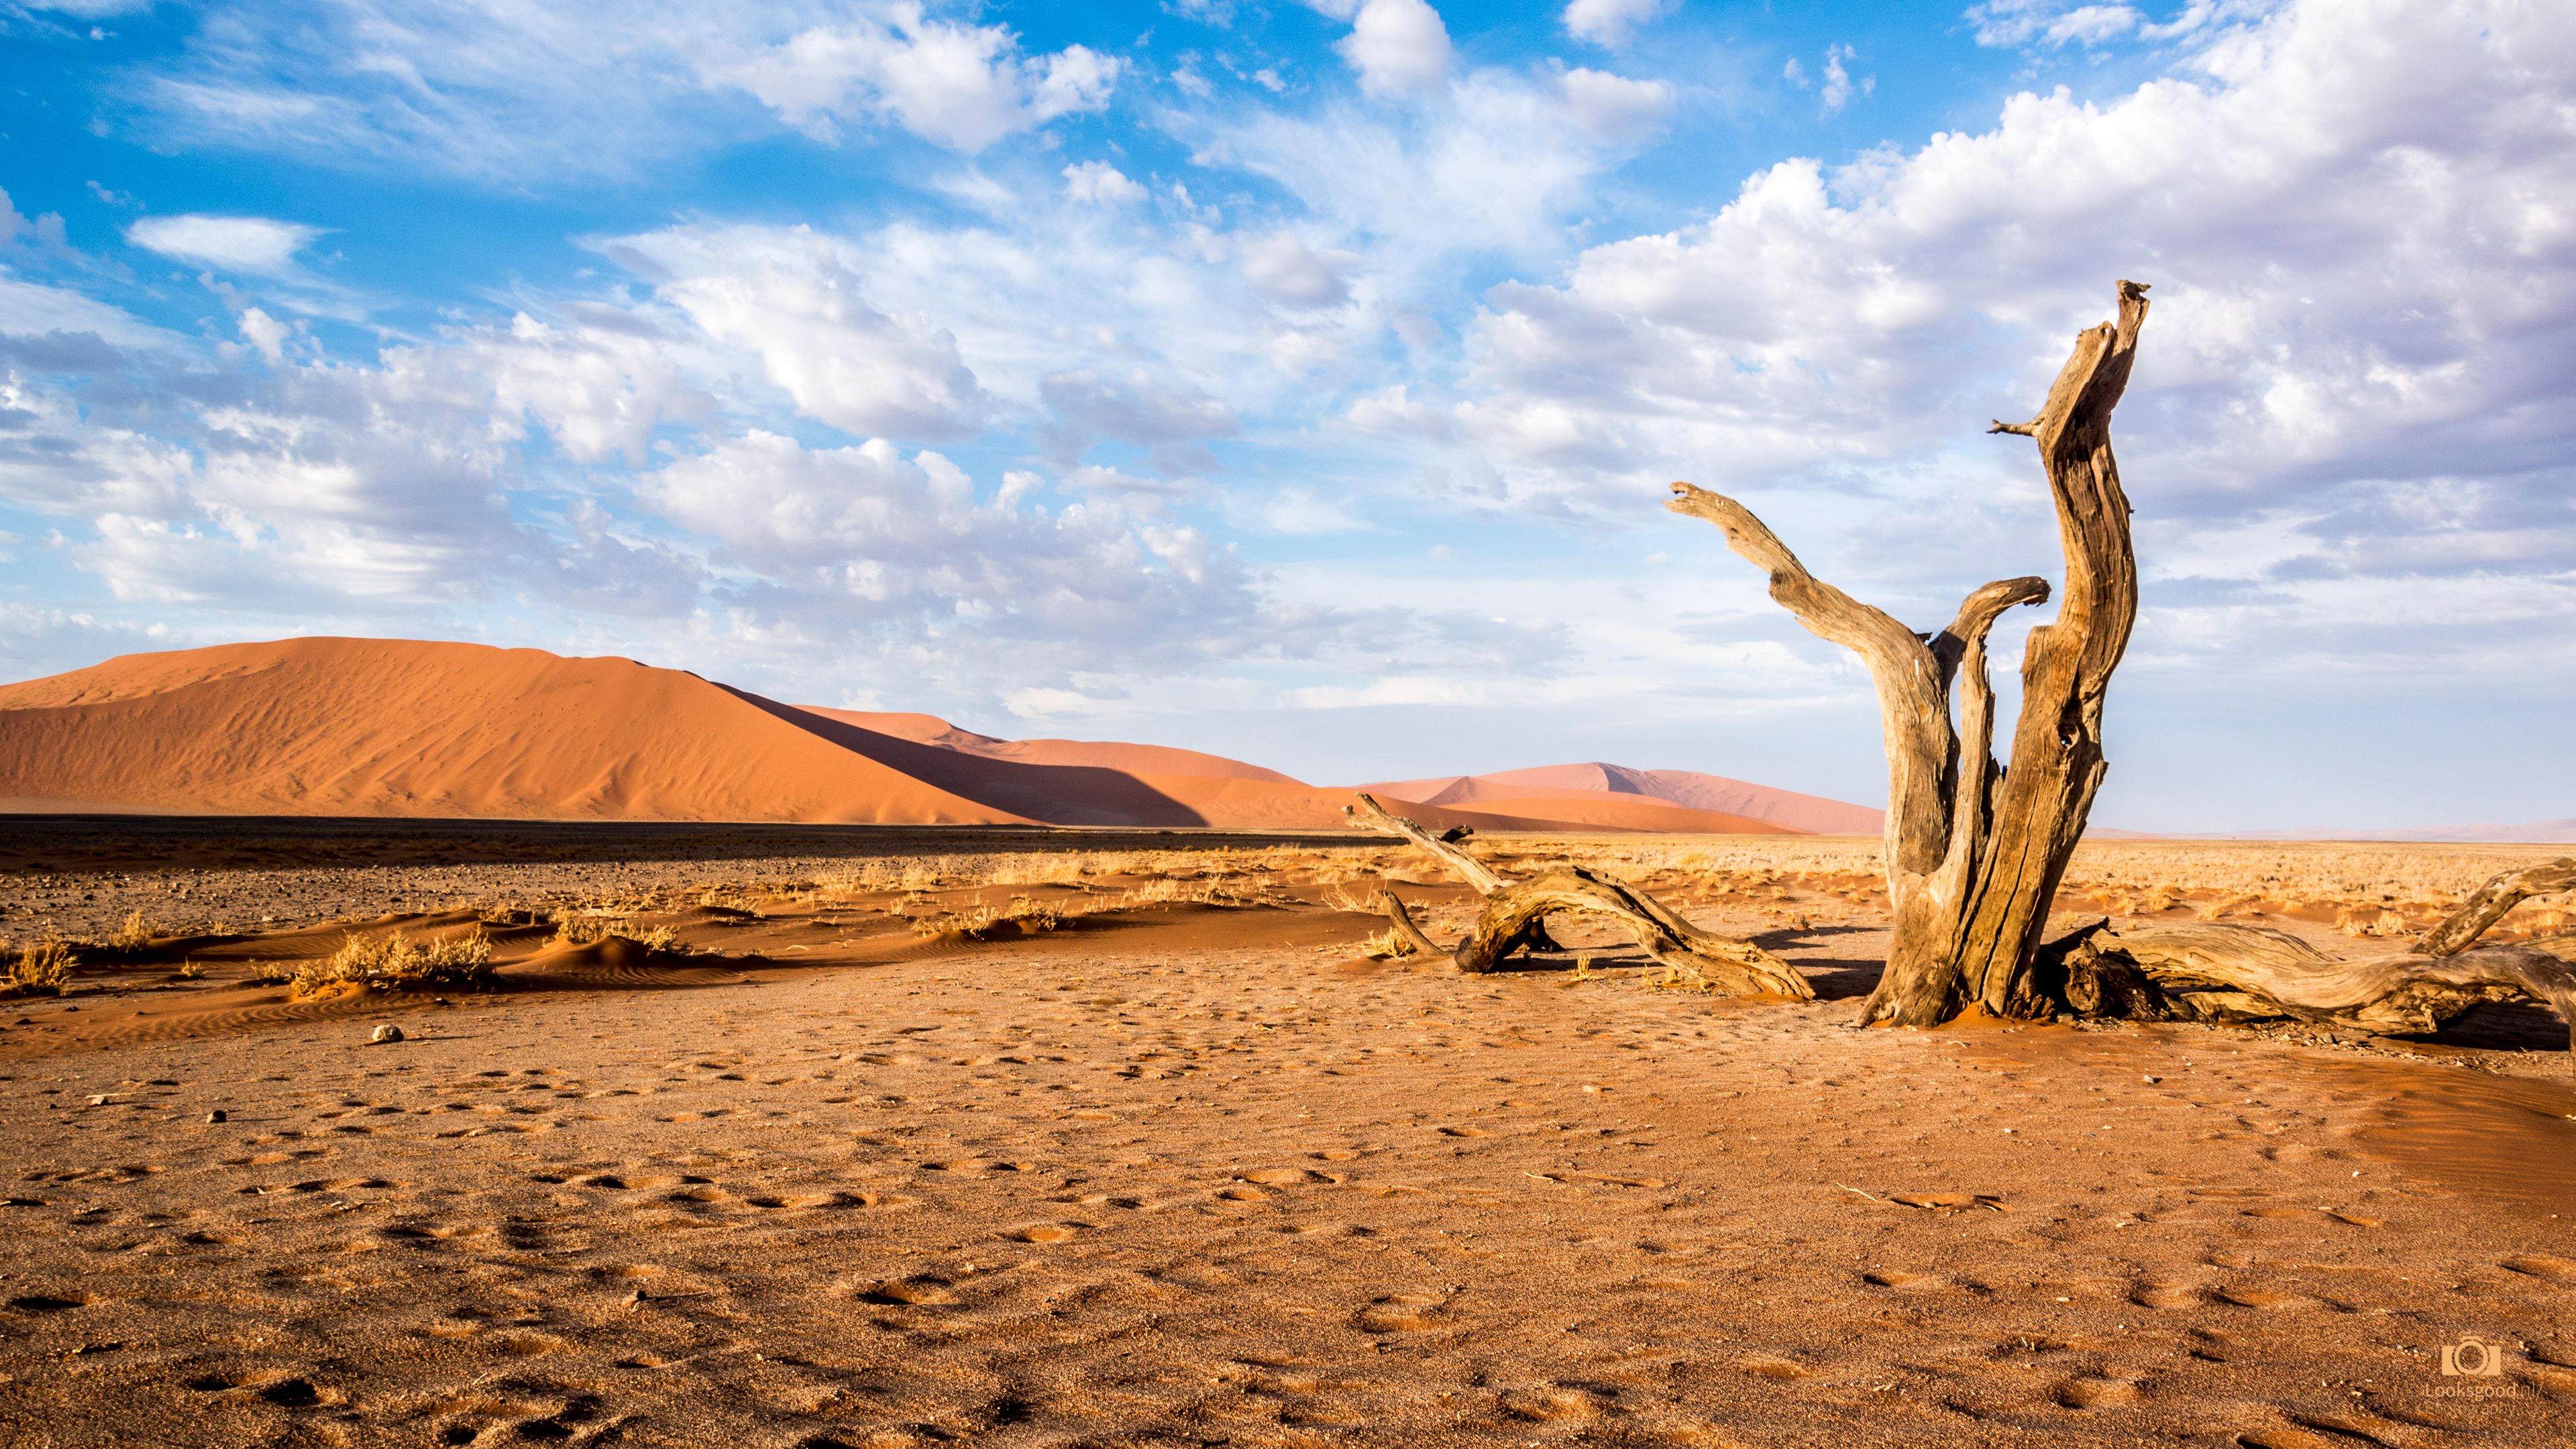 Sossusvlei Namibia Desert 4K Wallpaper / Desktop Background